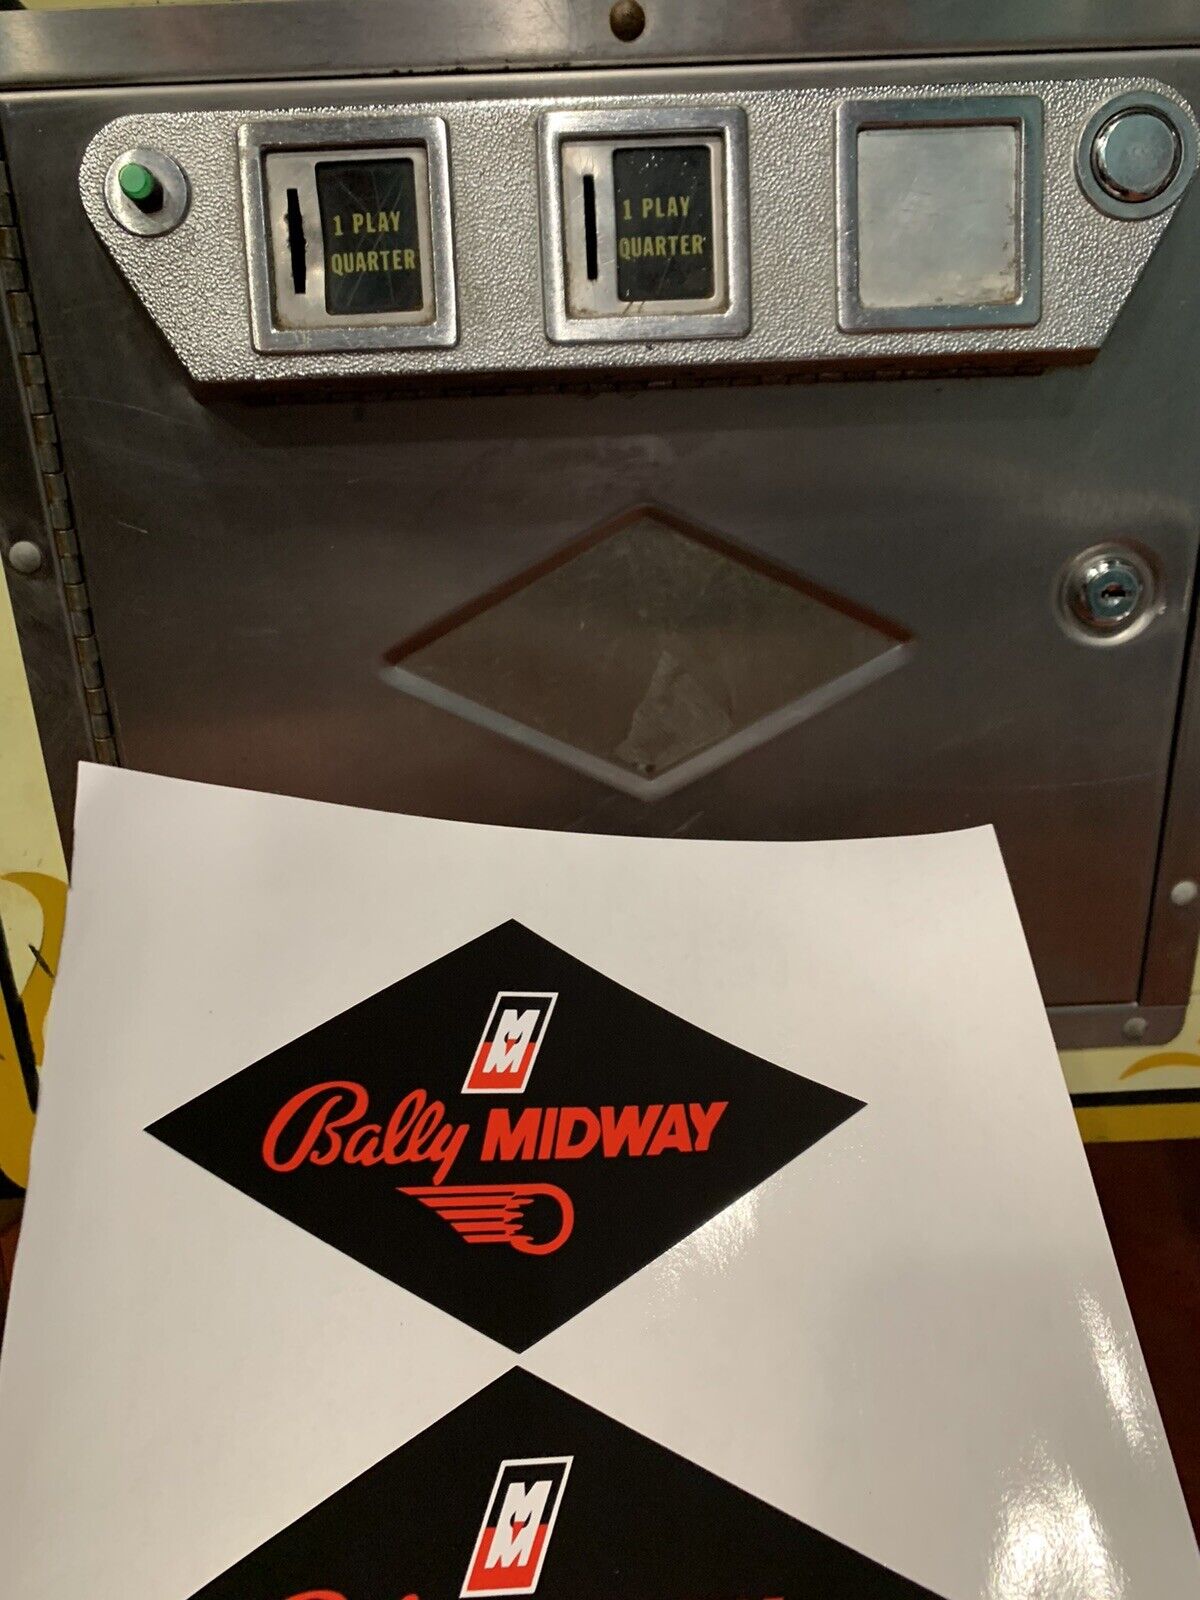 BALLY-MIDWAY Diamond Shape Vinyl Die Cut Pinball Machine Door Sticker 6” X 3.25”